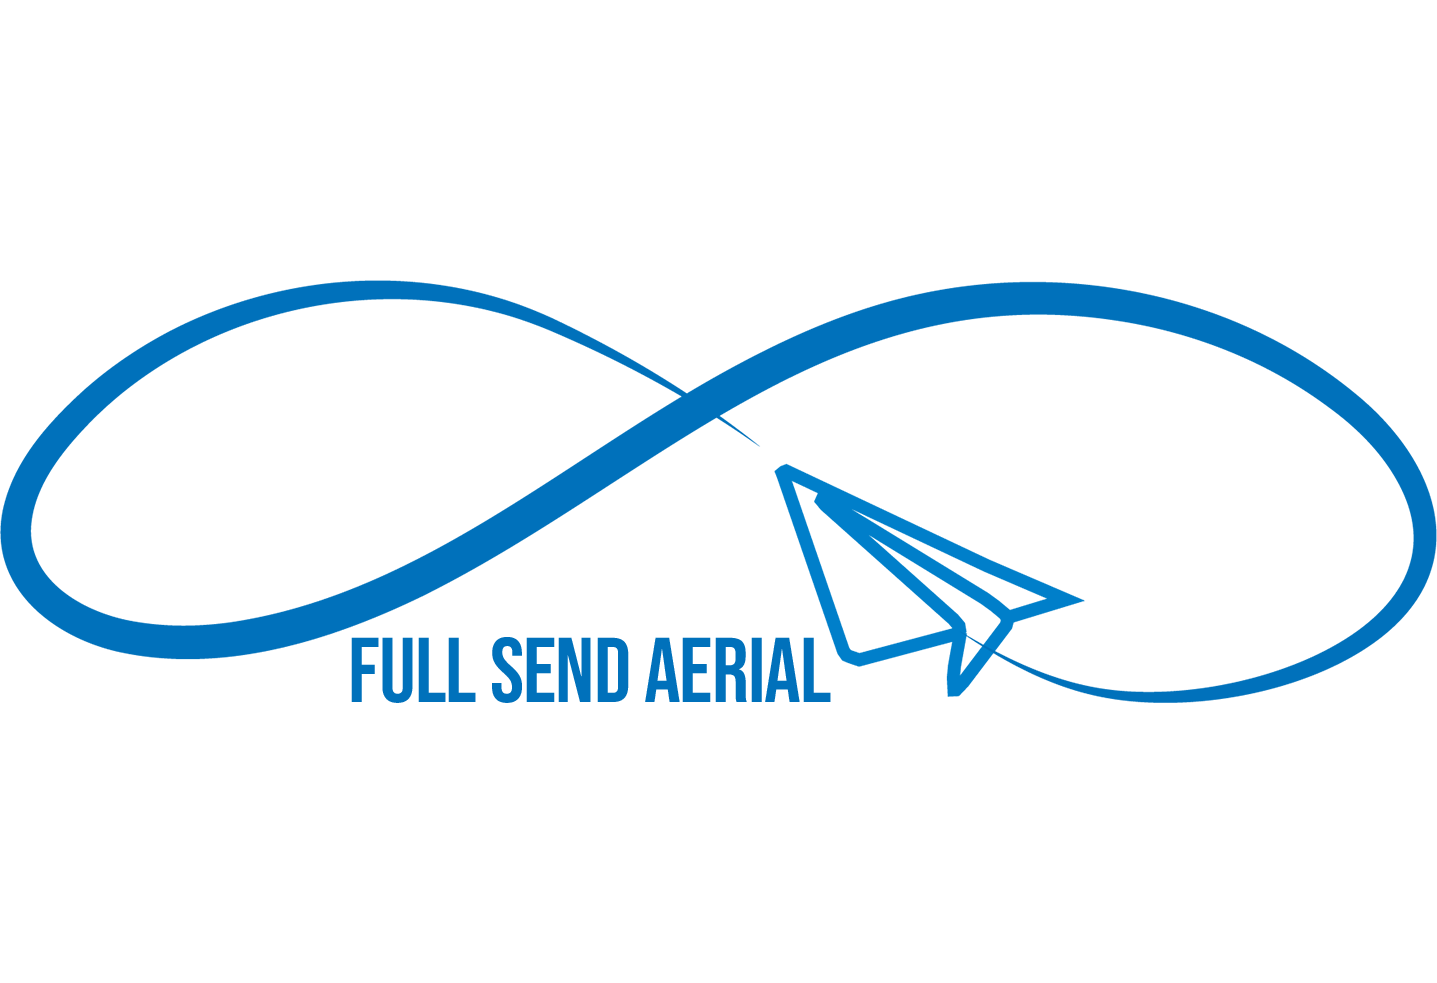 Full Send Aerial wordmark